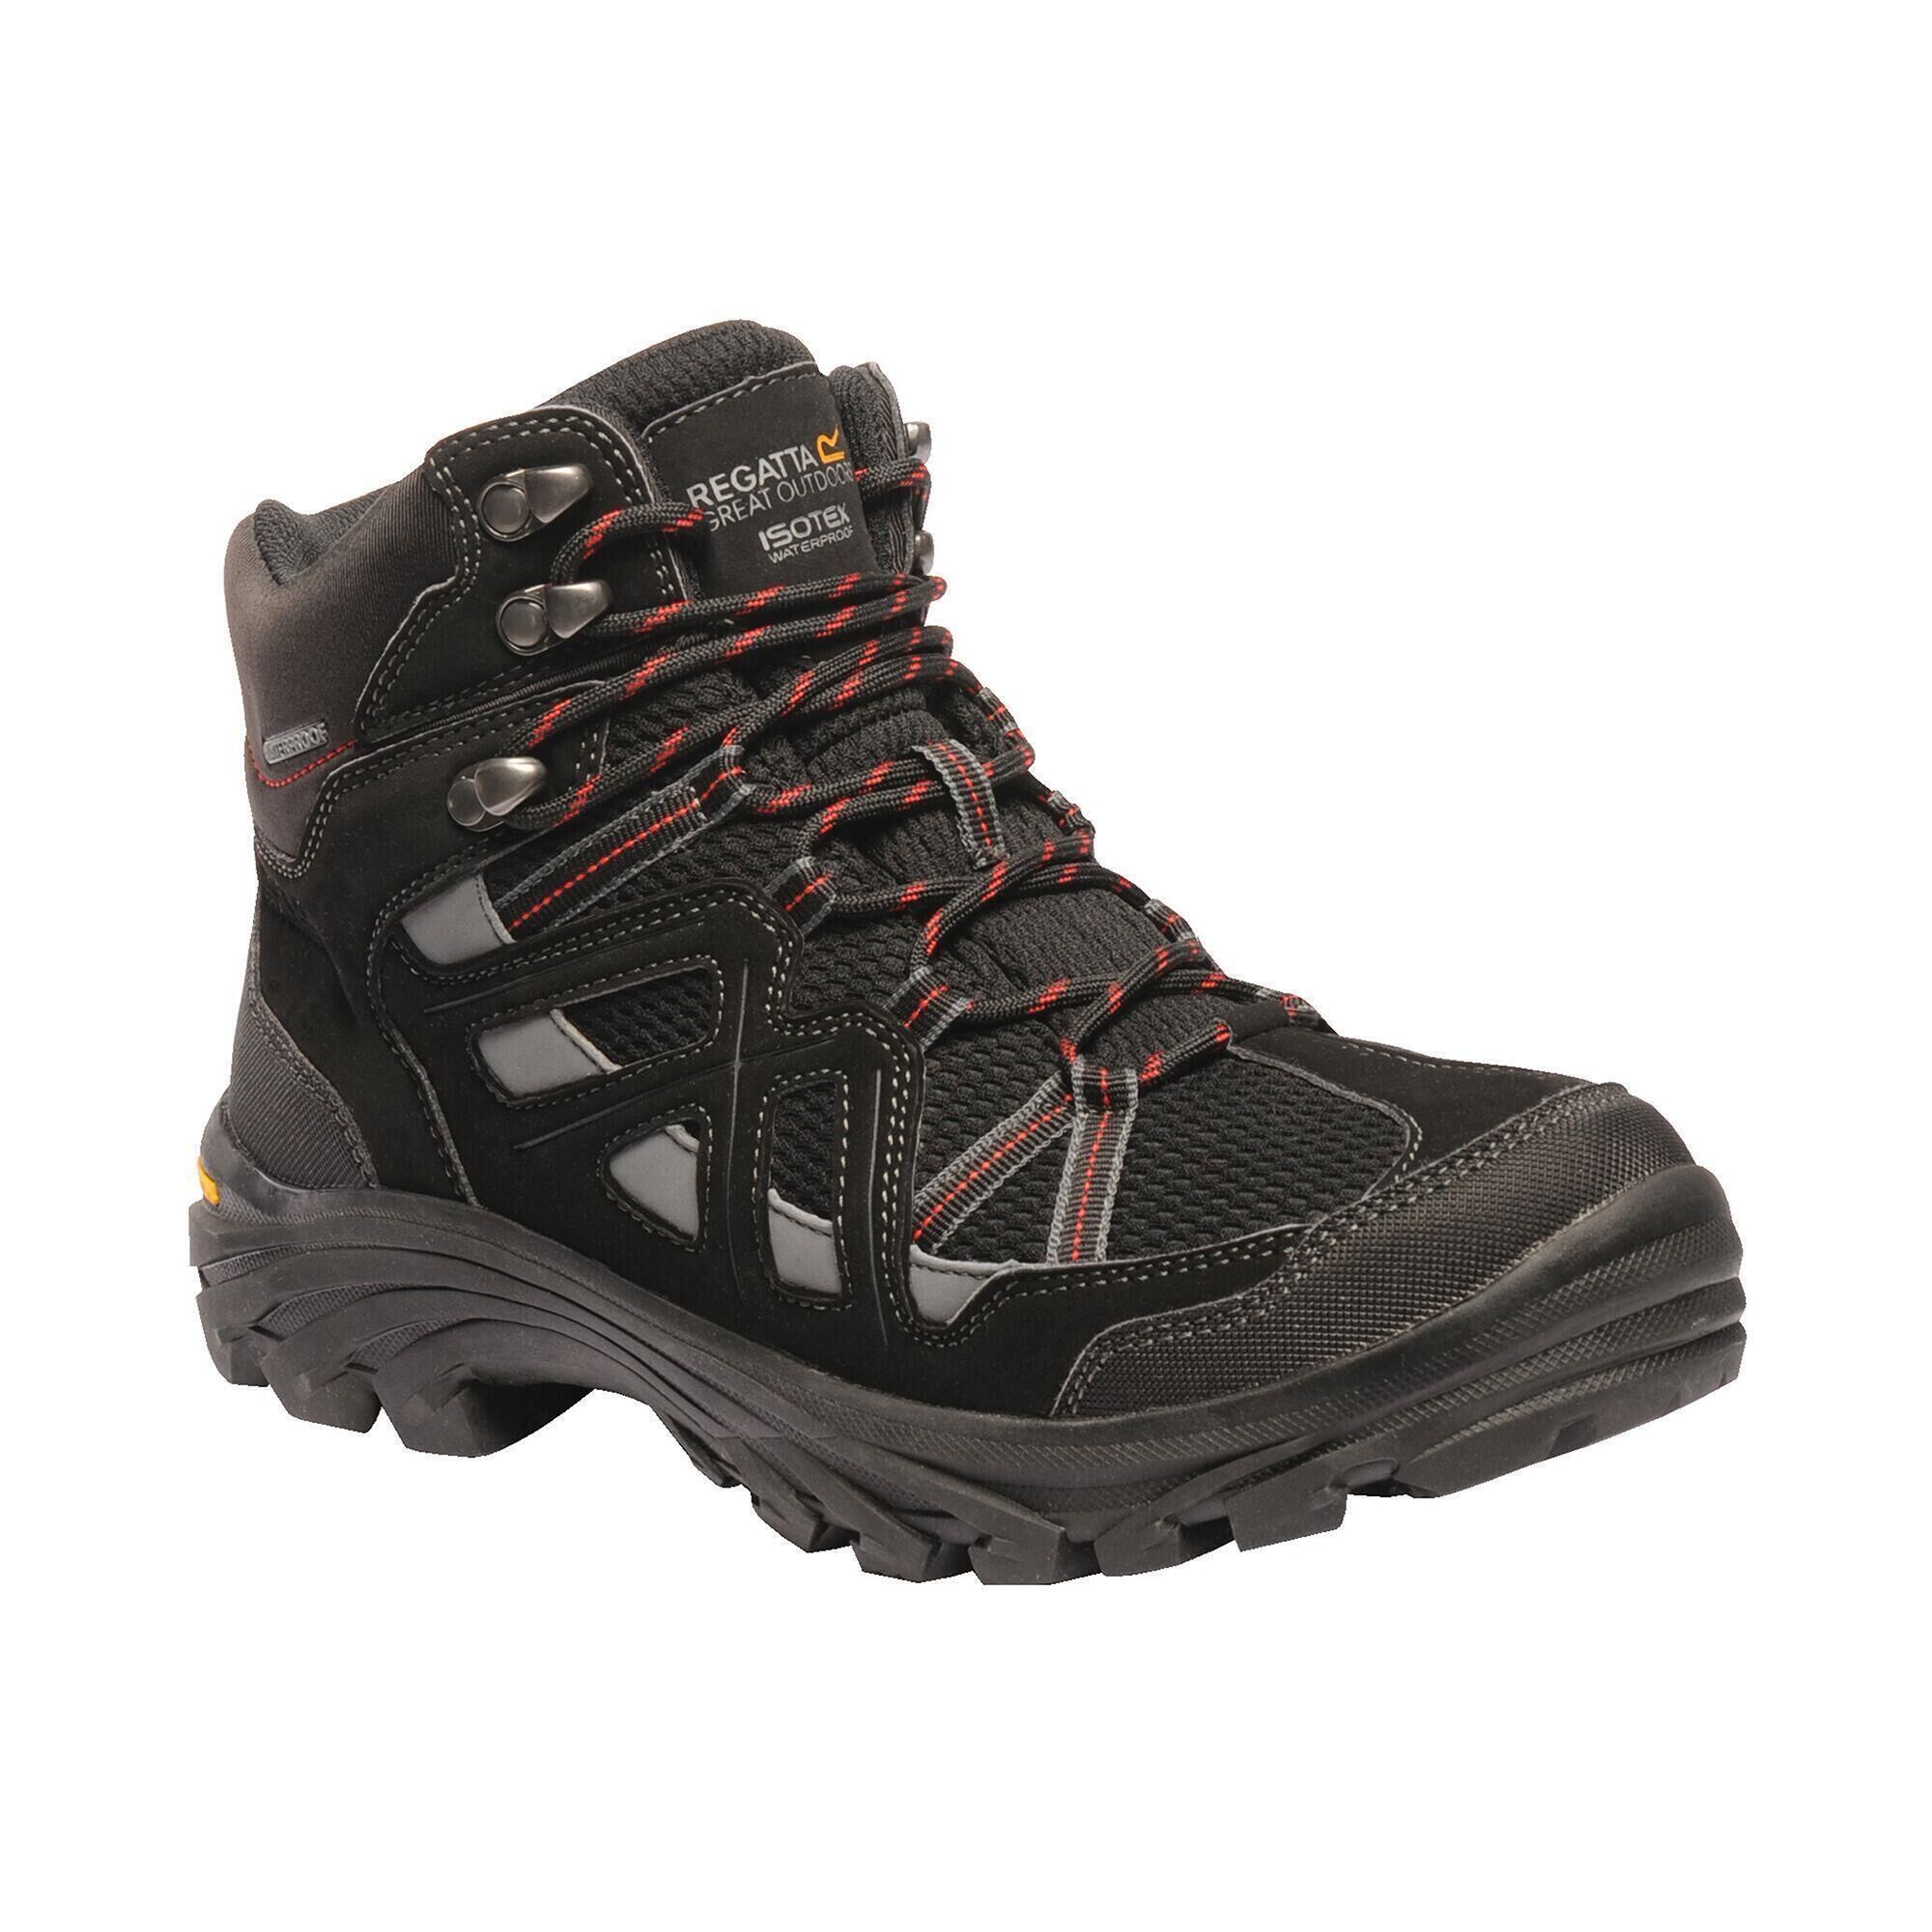 REGATTA Burrell II Men's Hiking Boots - Black/Grey